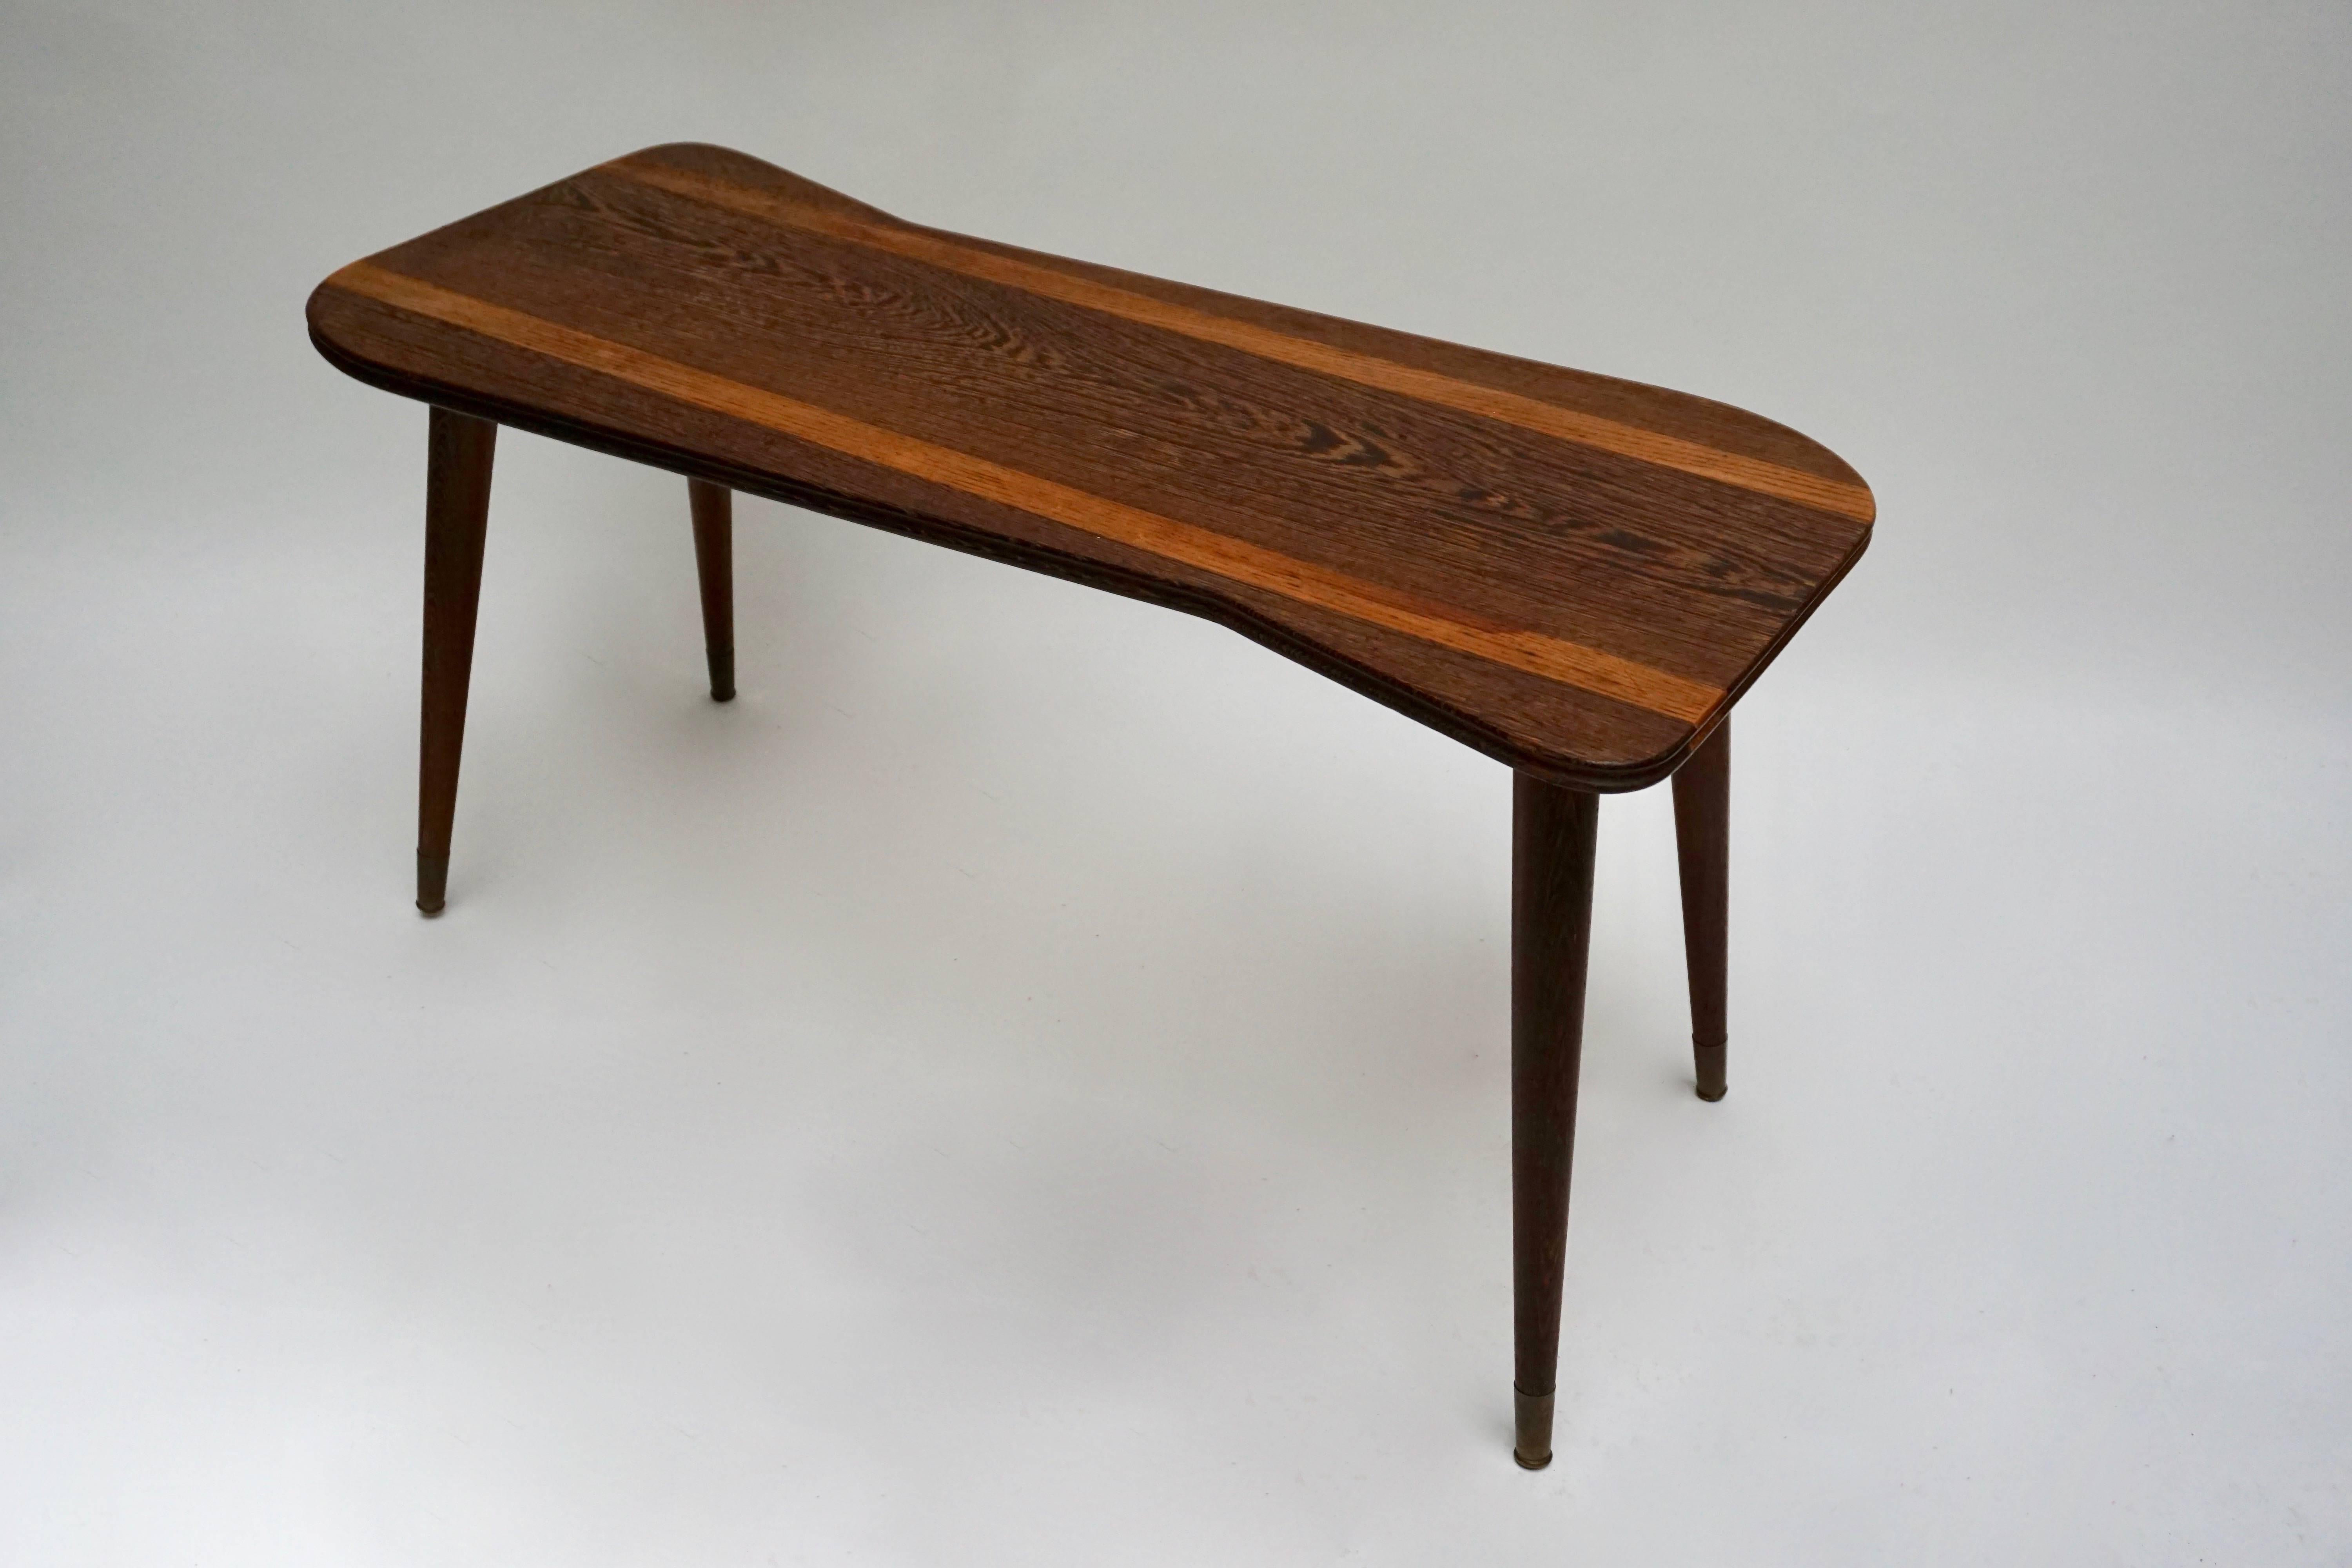 Elegant table basse en bois de wenge.
Mesures : Hauteur 49 cm.
Largeur 98 cm.
Profondeur 44 cm.
      